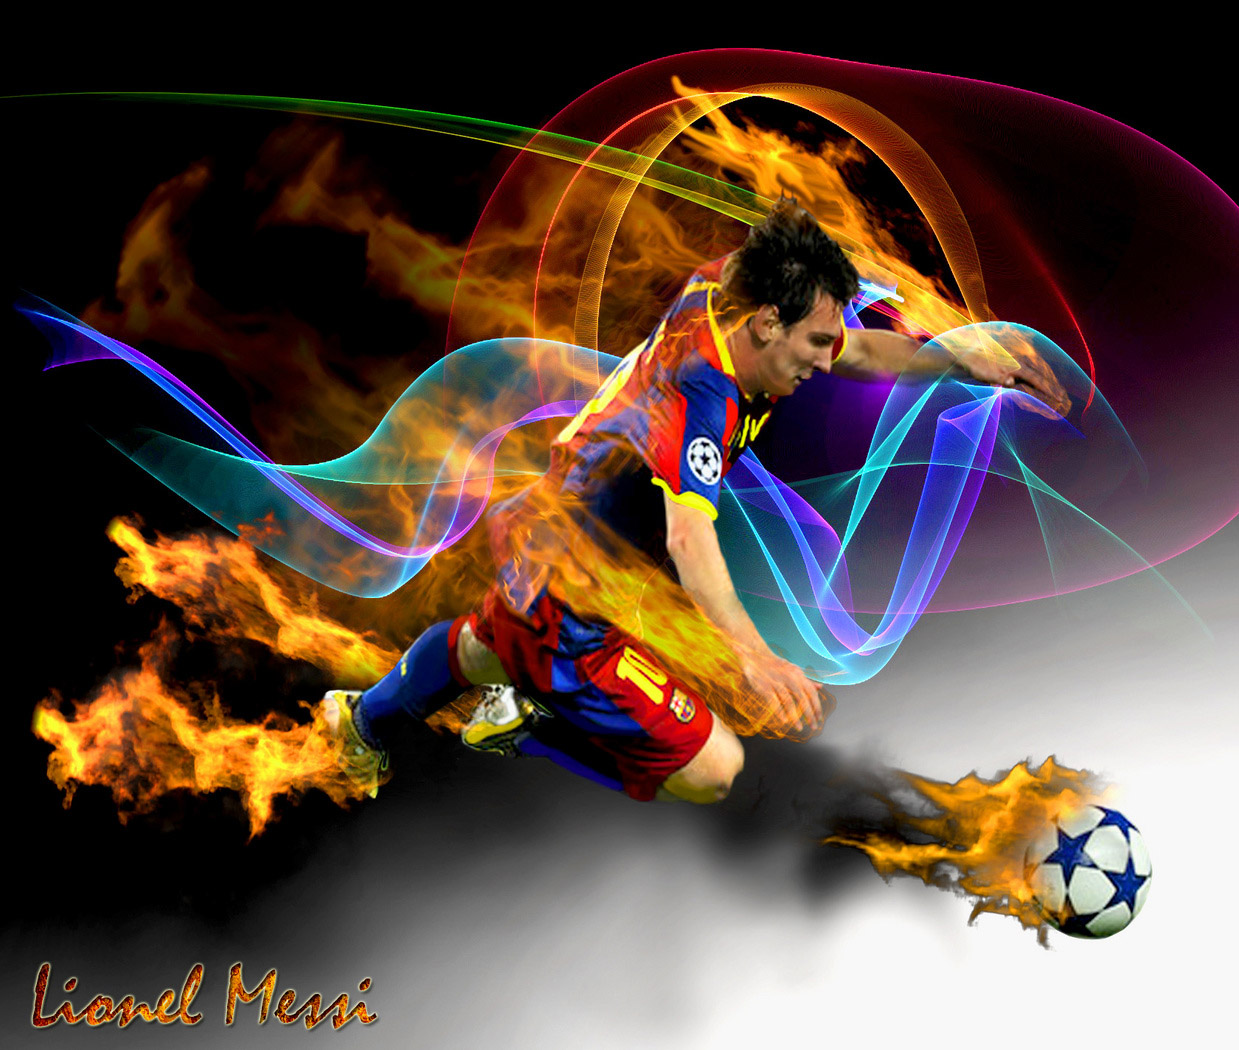 Nombre: Lionel Andres Apellido: Messi La Edad: 24 años Fecha de nacimiento: 24 junio.